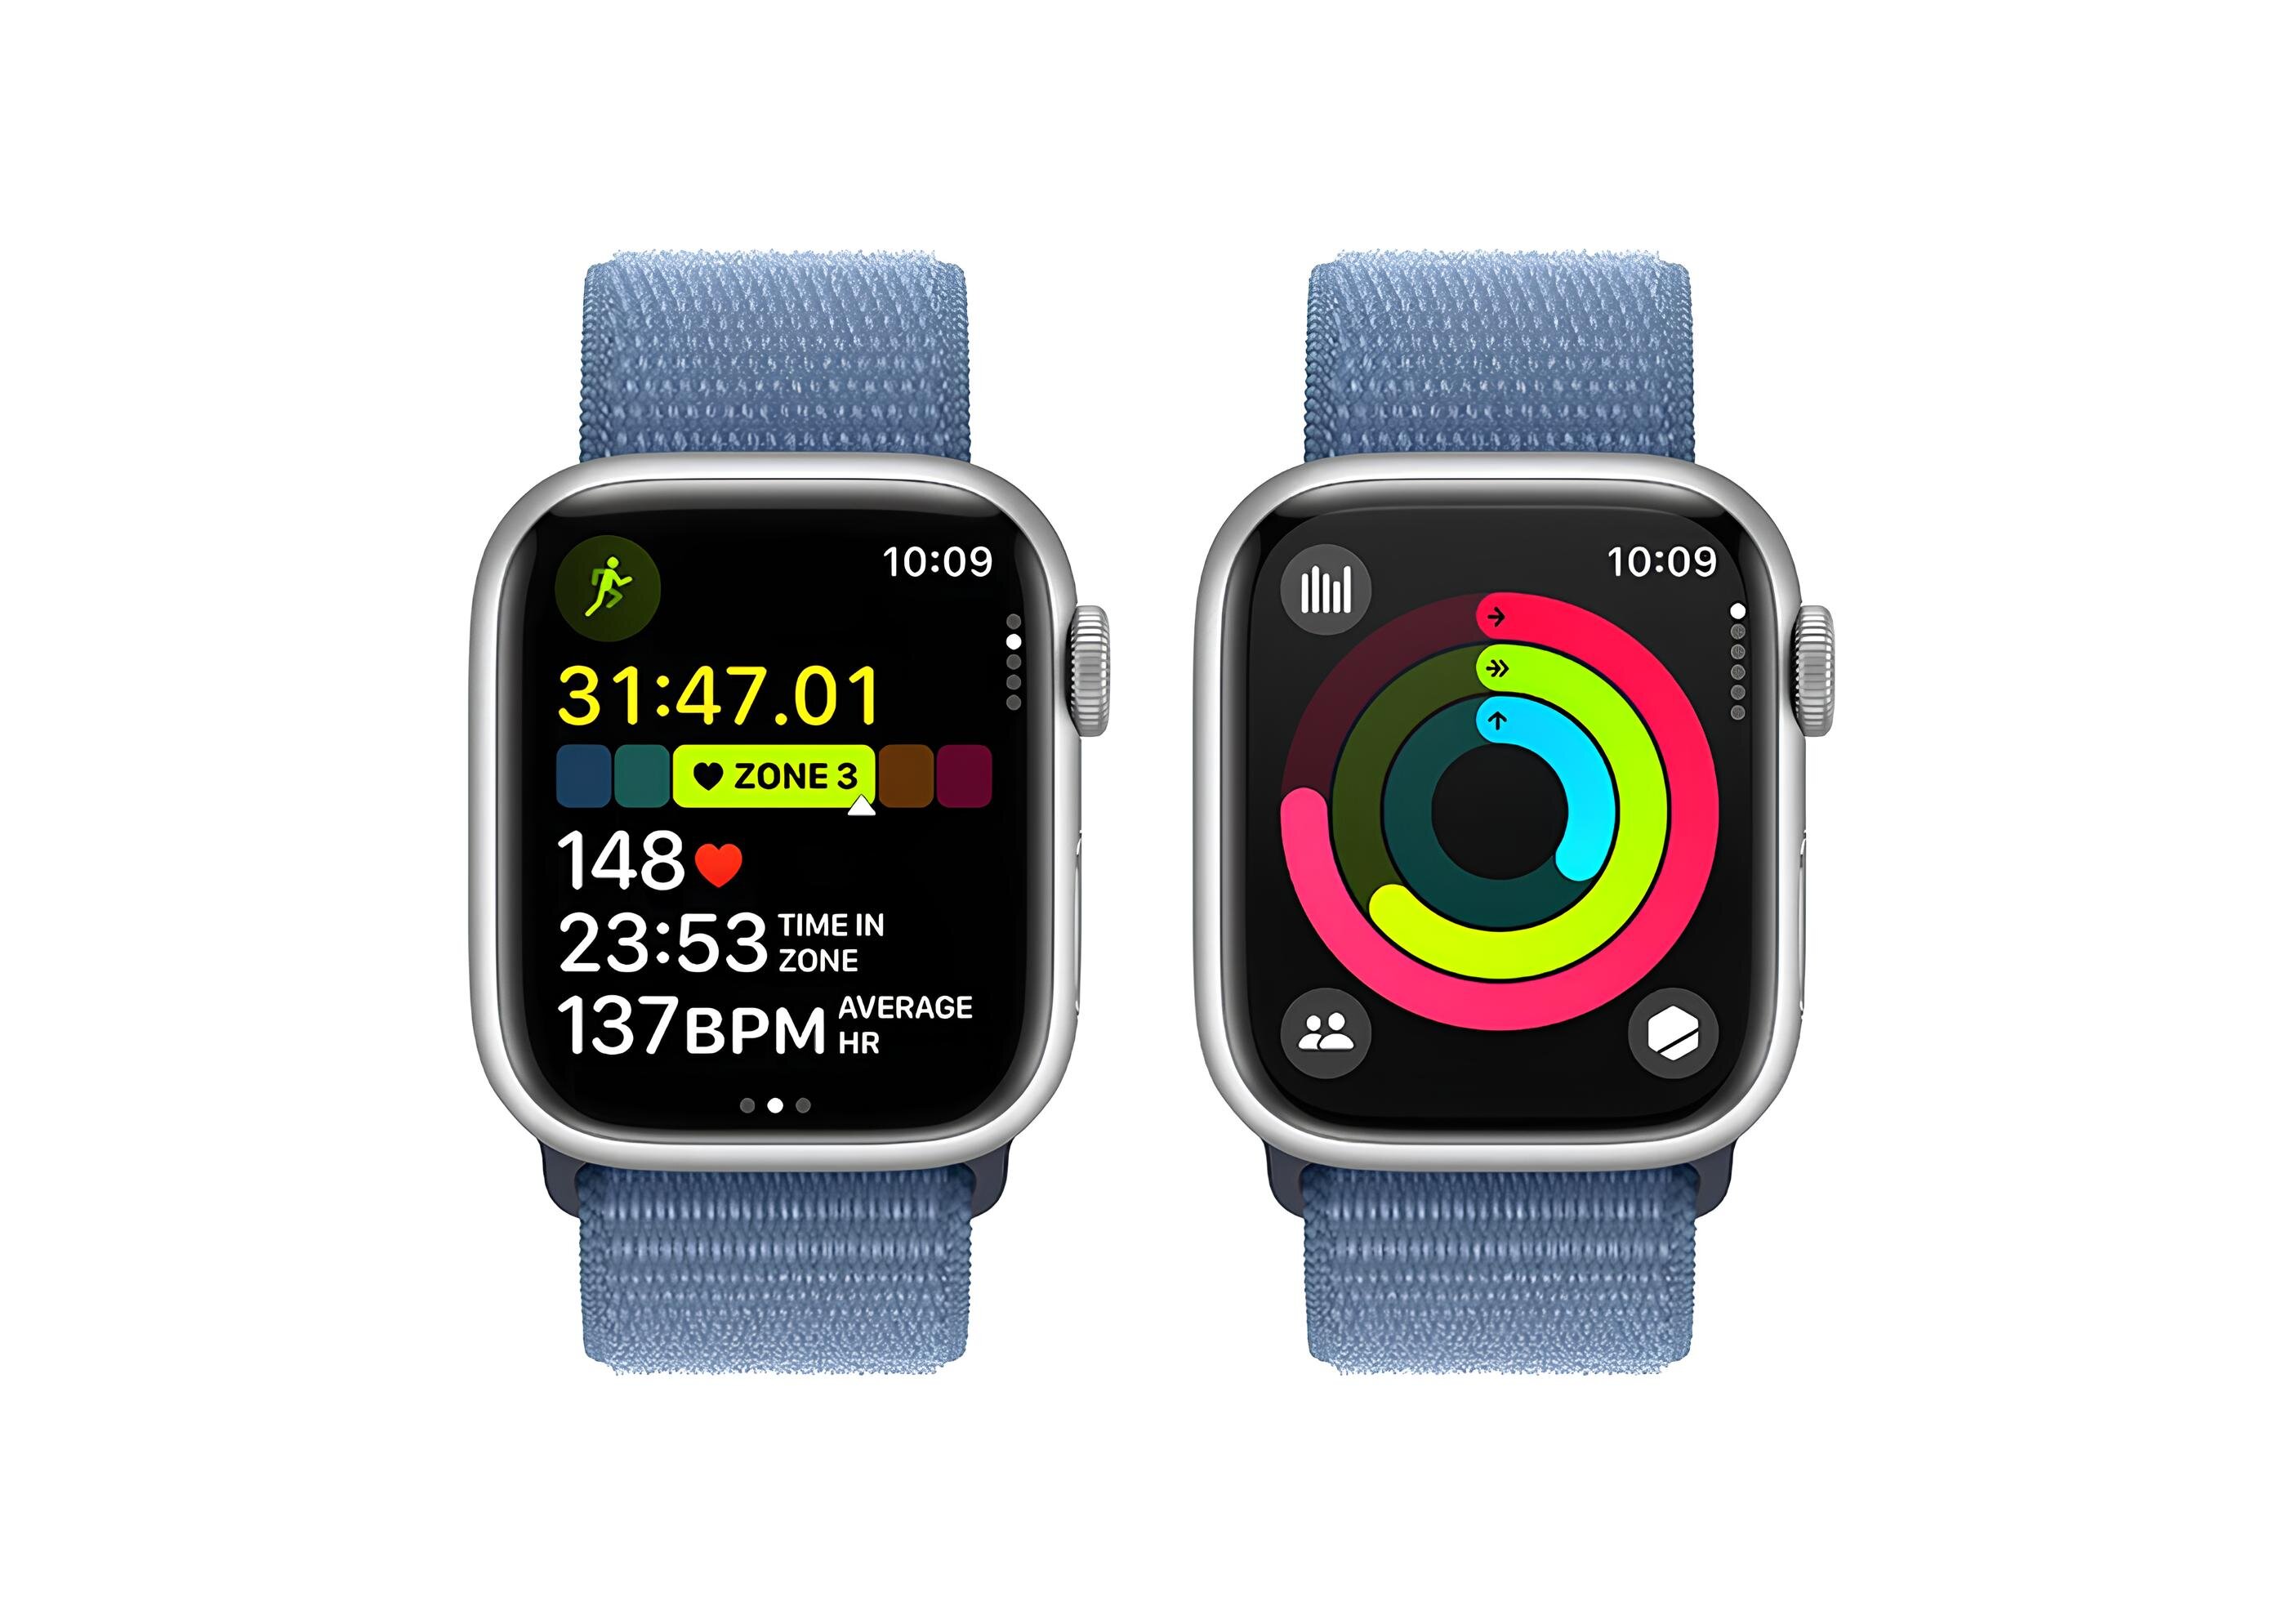 Apple Watch Series 9 GPS Aluminiumboett